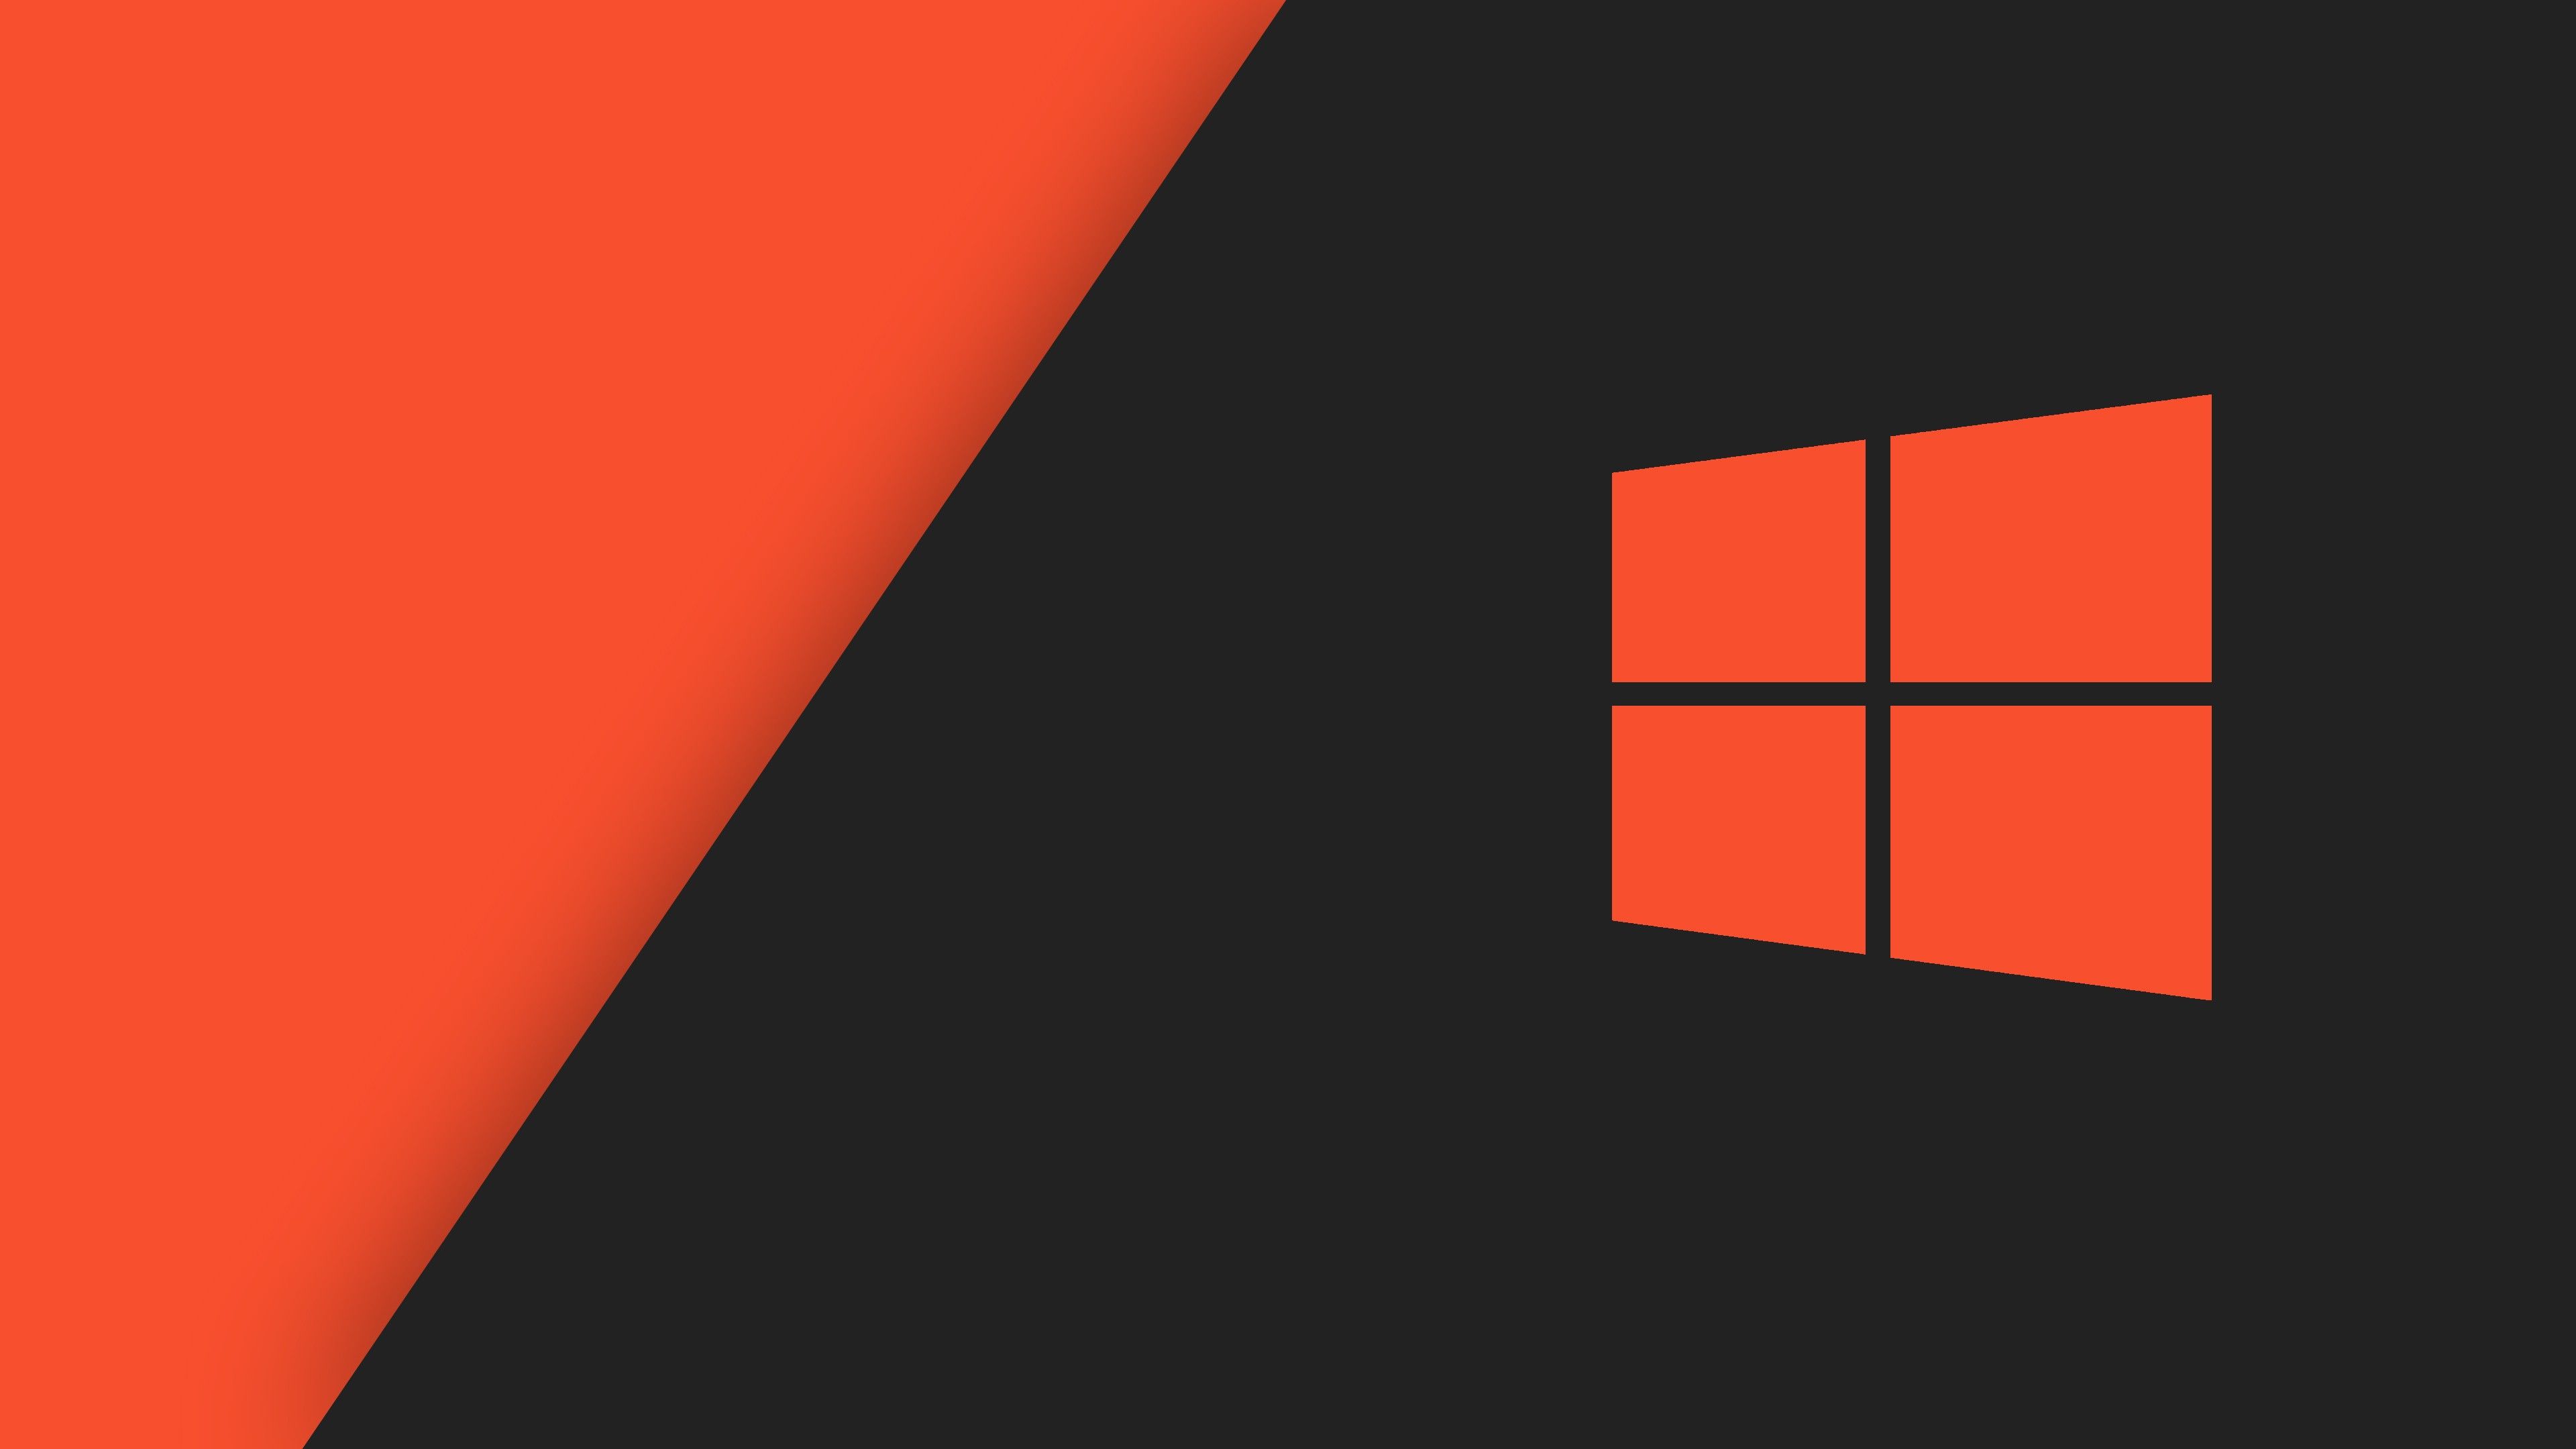 Hình nền Windows 10 màu cam – lựa chọn đầy phong cách dành cho các bạn trẻ sành điệu. Với sắc cam cá tính, hình nền này sẽ mang đến cho bạn một không gian làm việc đầy màu sắc và năng động.